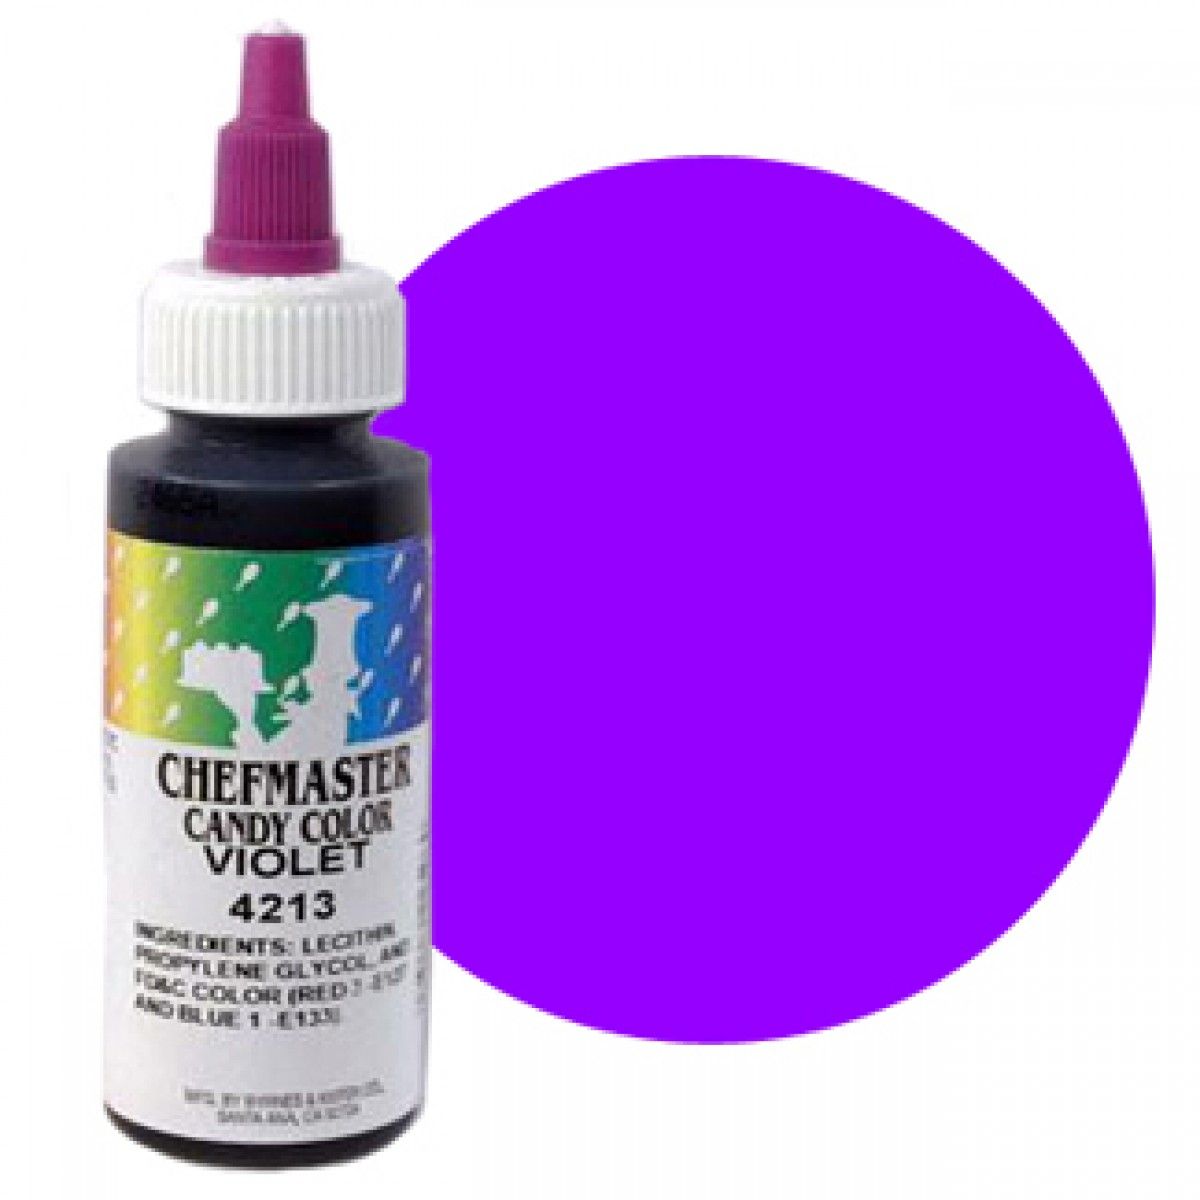 Краска пищевая (violet) 4213 от СП Контакт